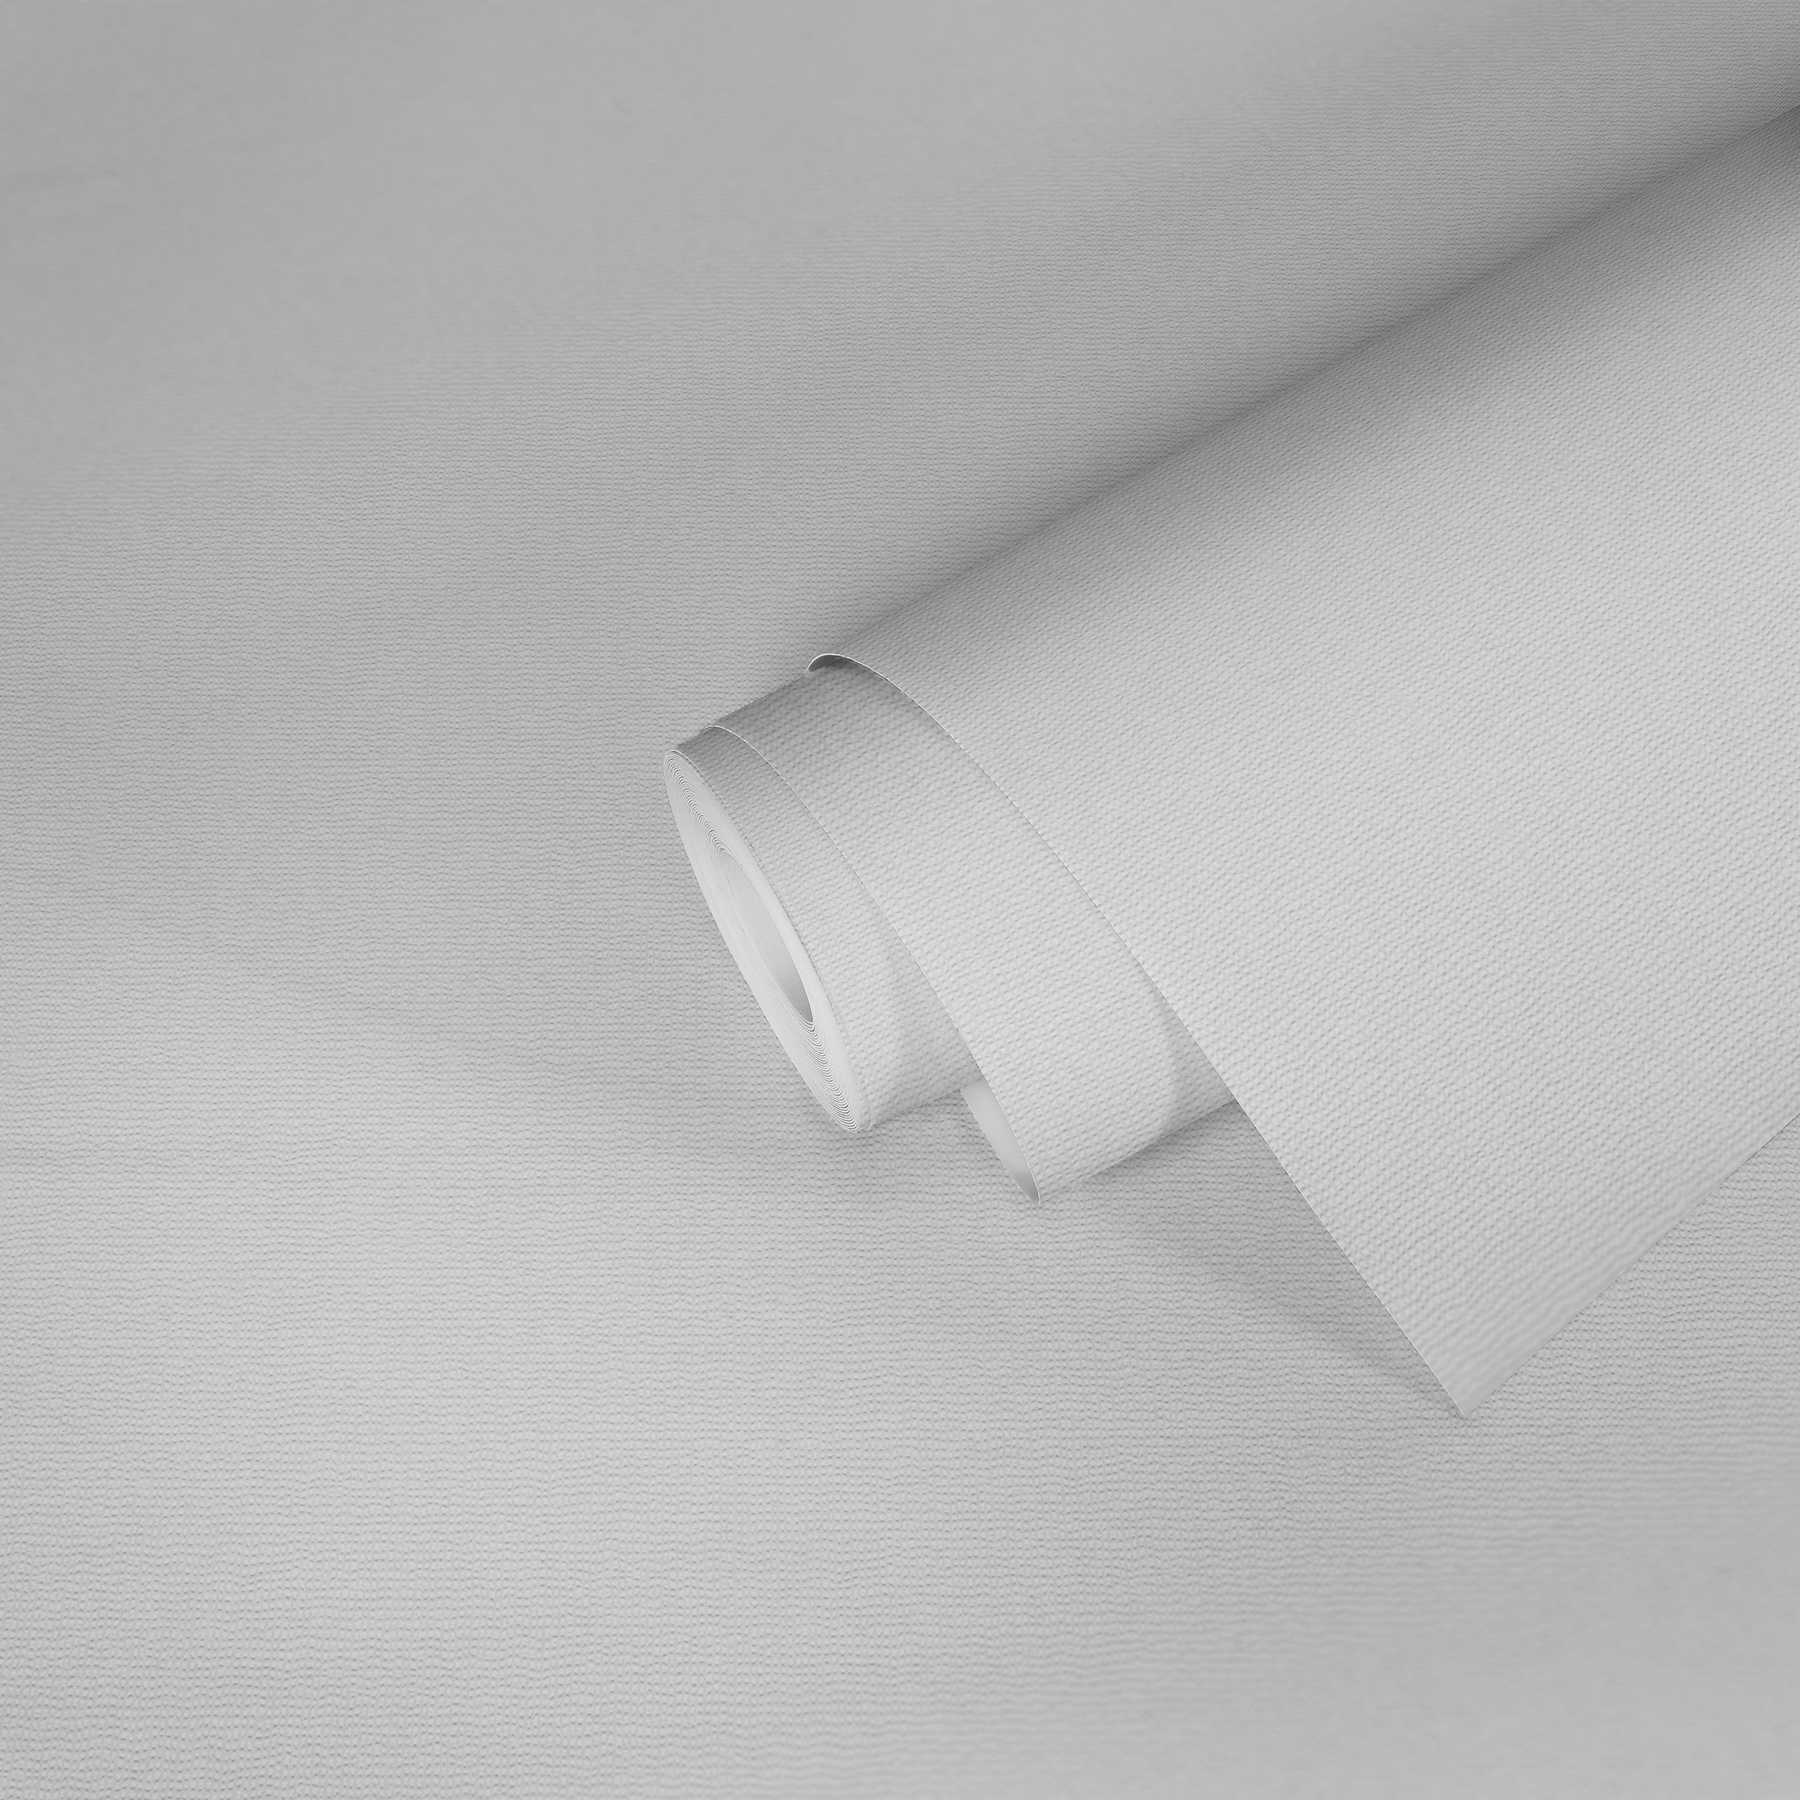             Pigment Tapete Vlies in Weiß mit flacher Texturoberfläche
        